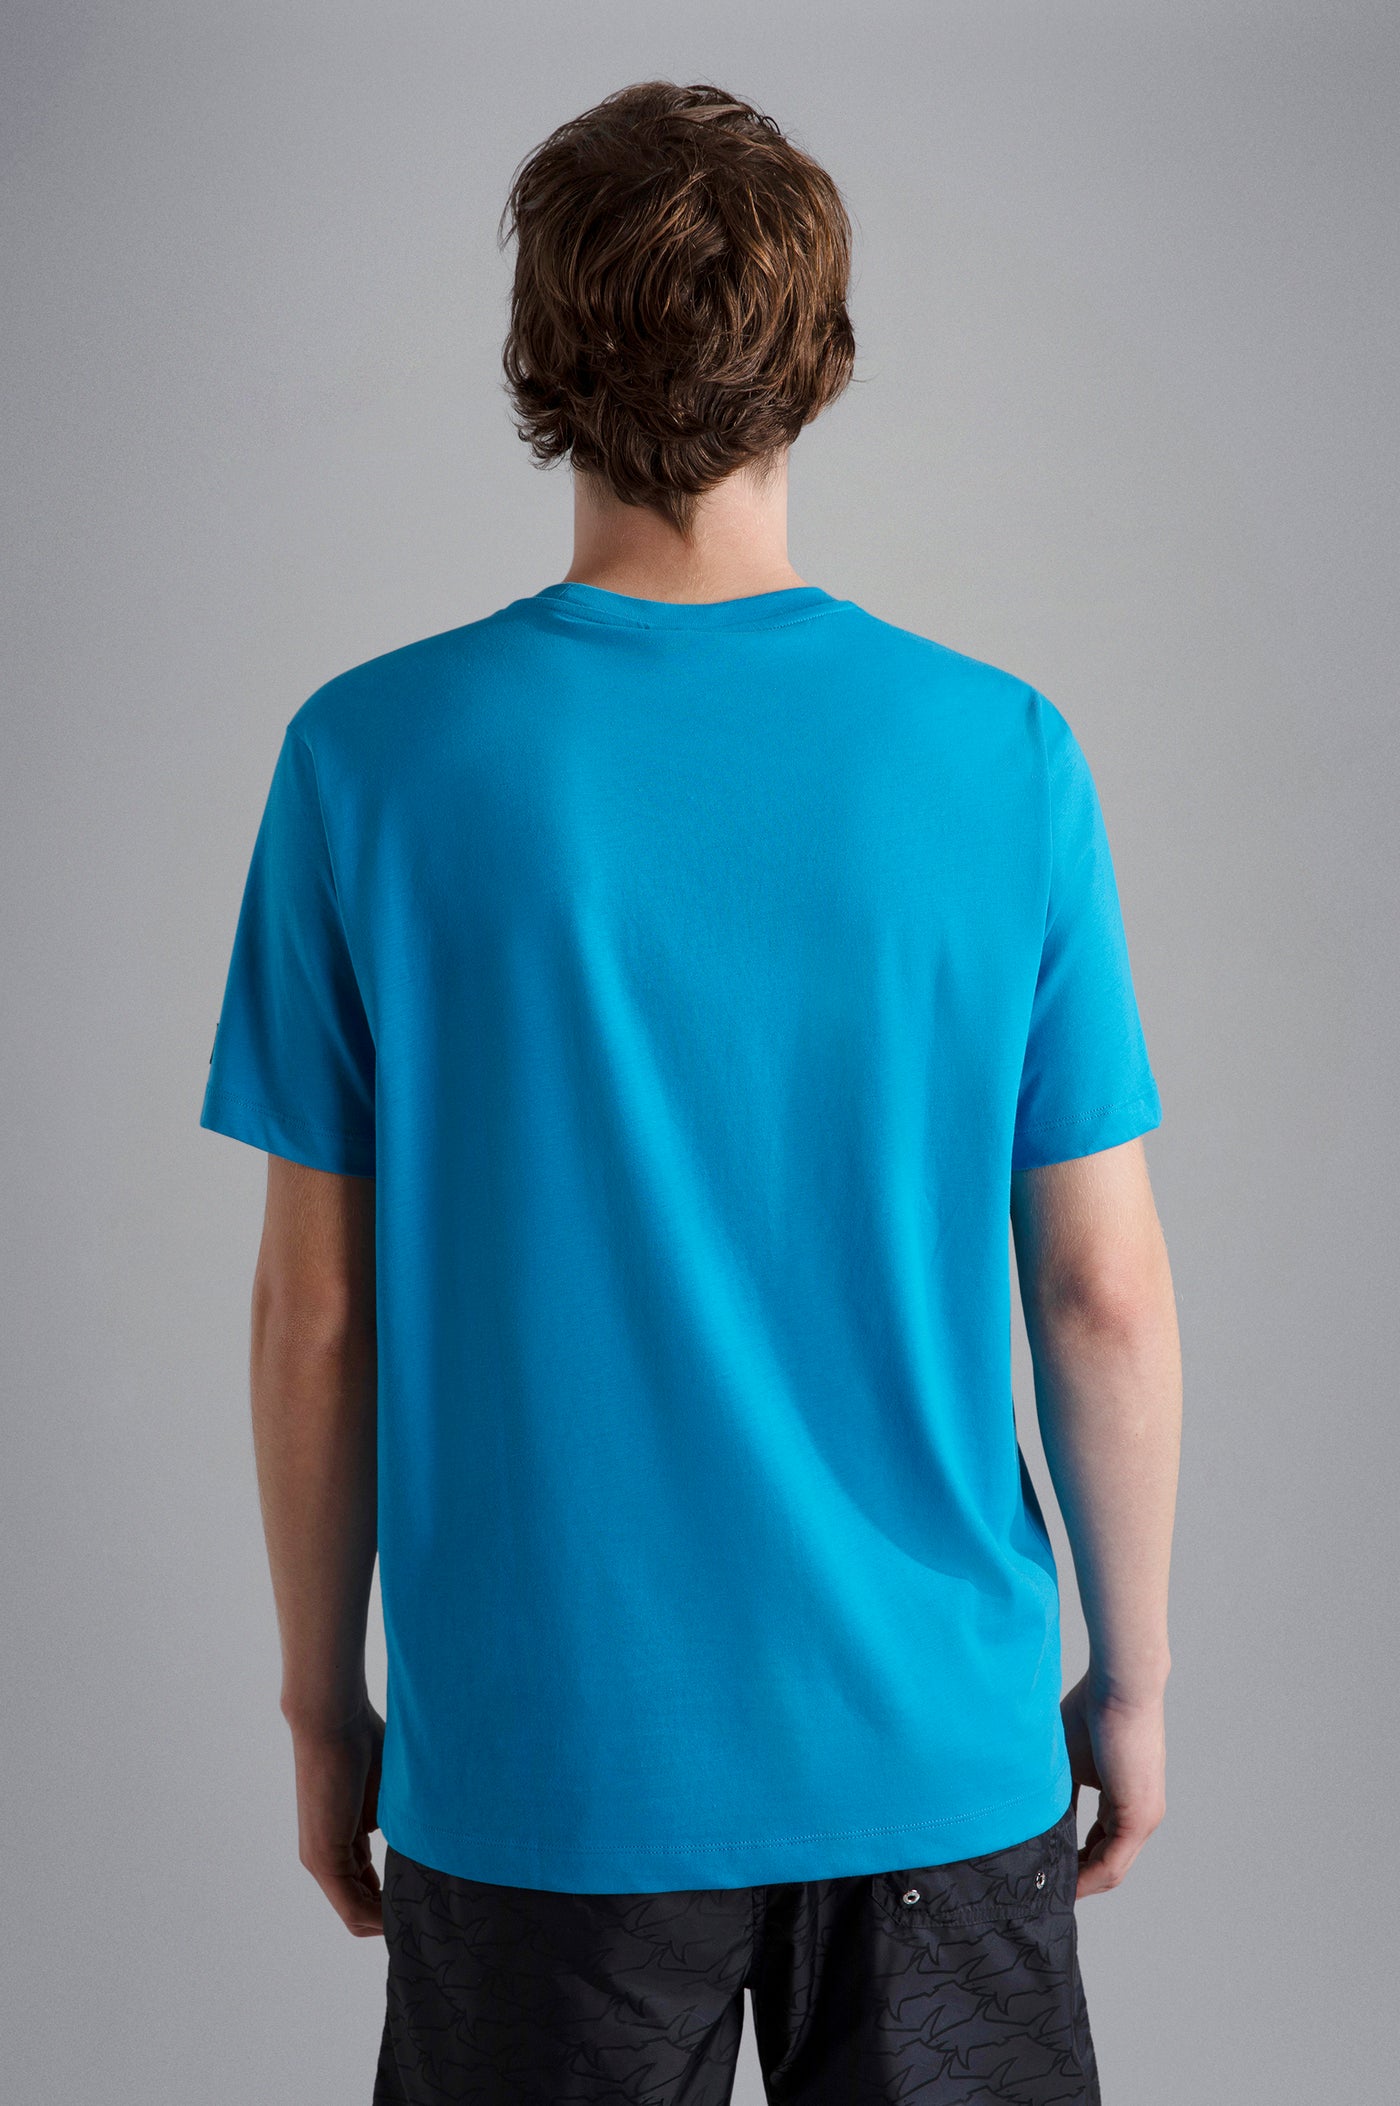 Paul & Shark Cotton T-shirt with Shark Print | Blue Azure